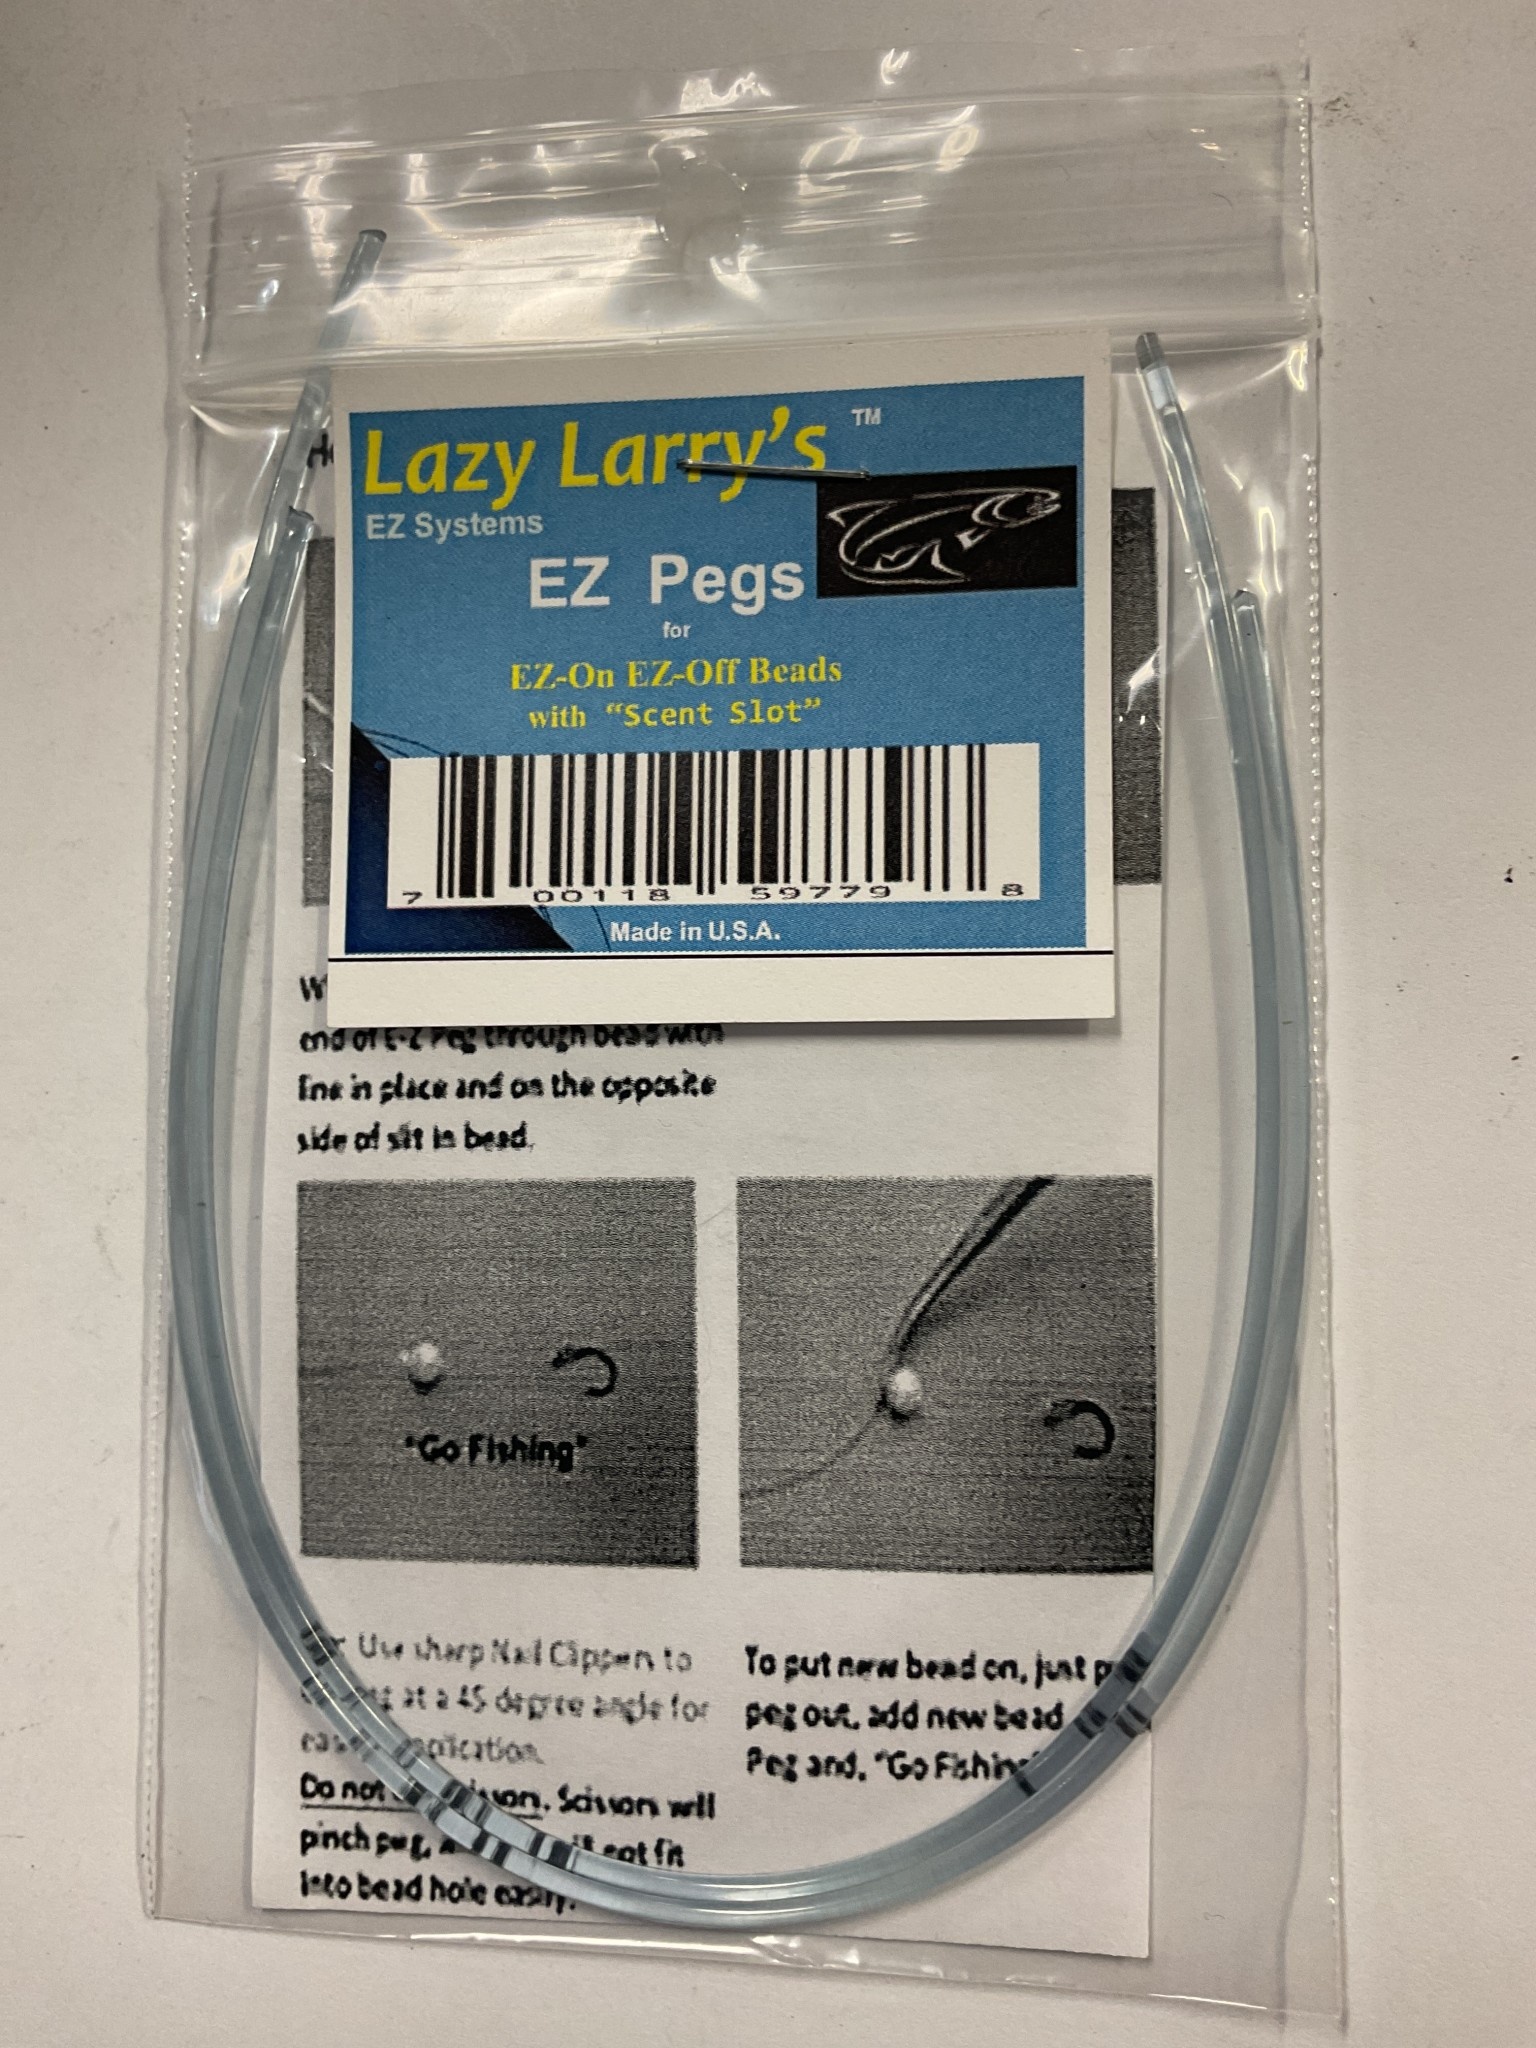 https://cdn.shoplightspeed.com/shops/640756/files/59494865/lazy-larrys-lazy-larrys-ez-p-01-ez-bead-pegs-clear.jpg